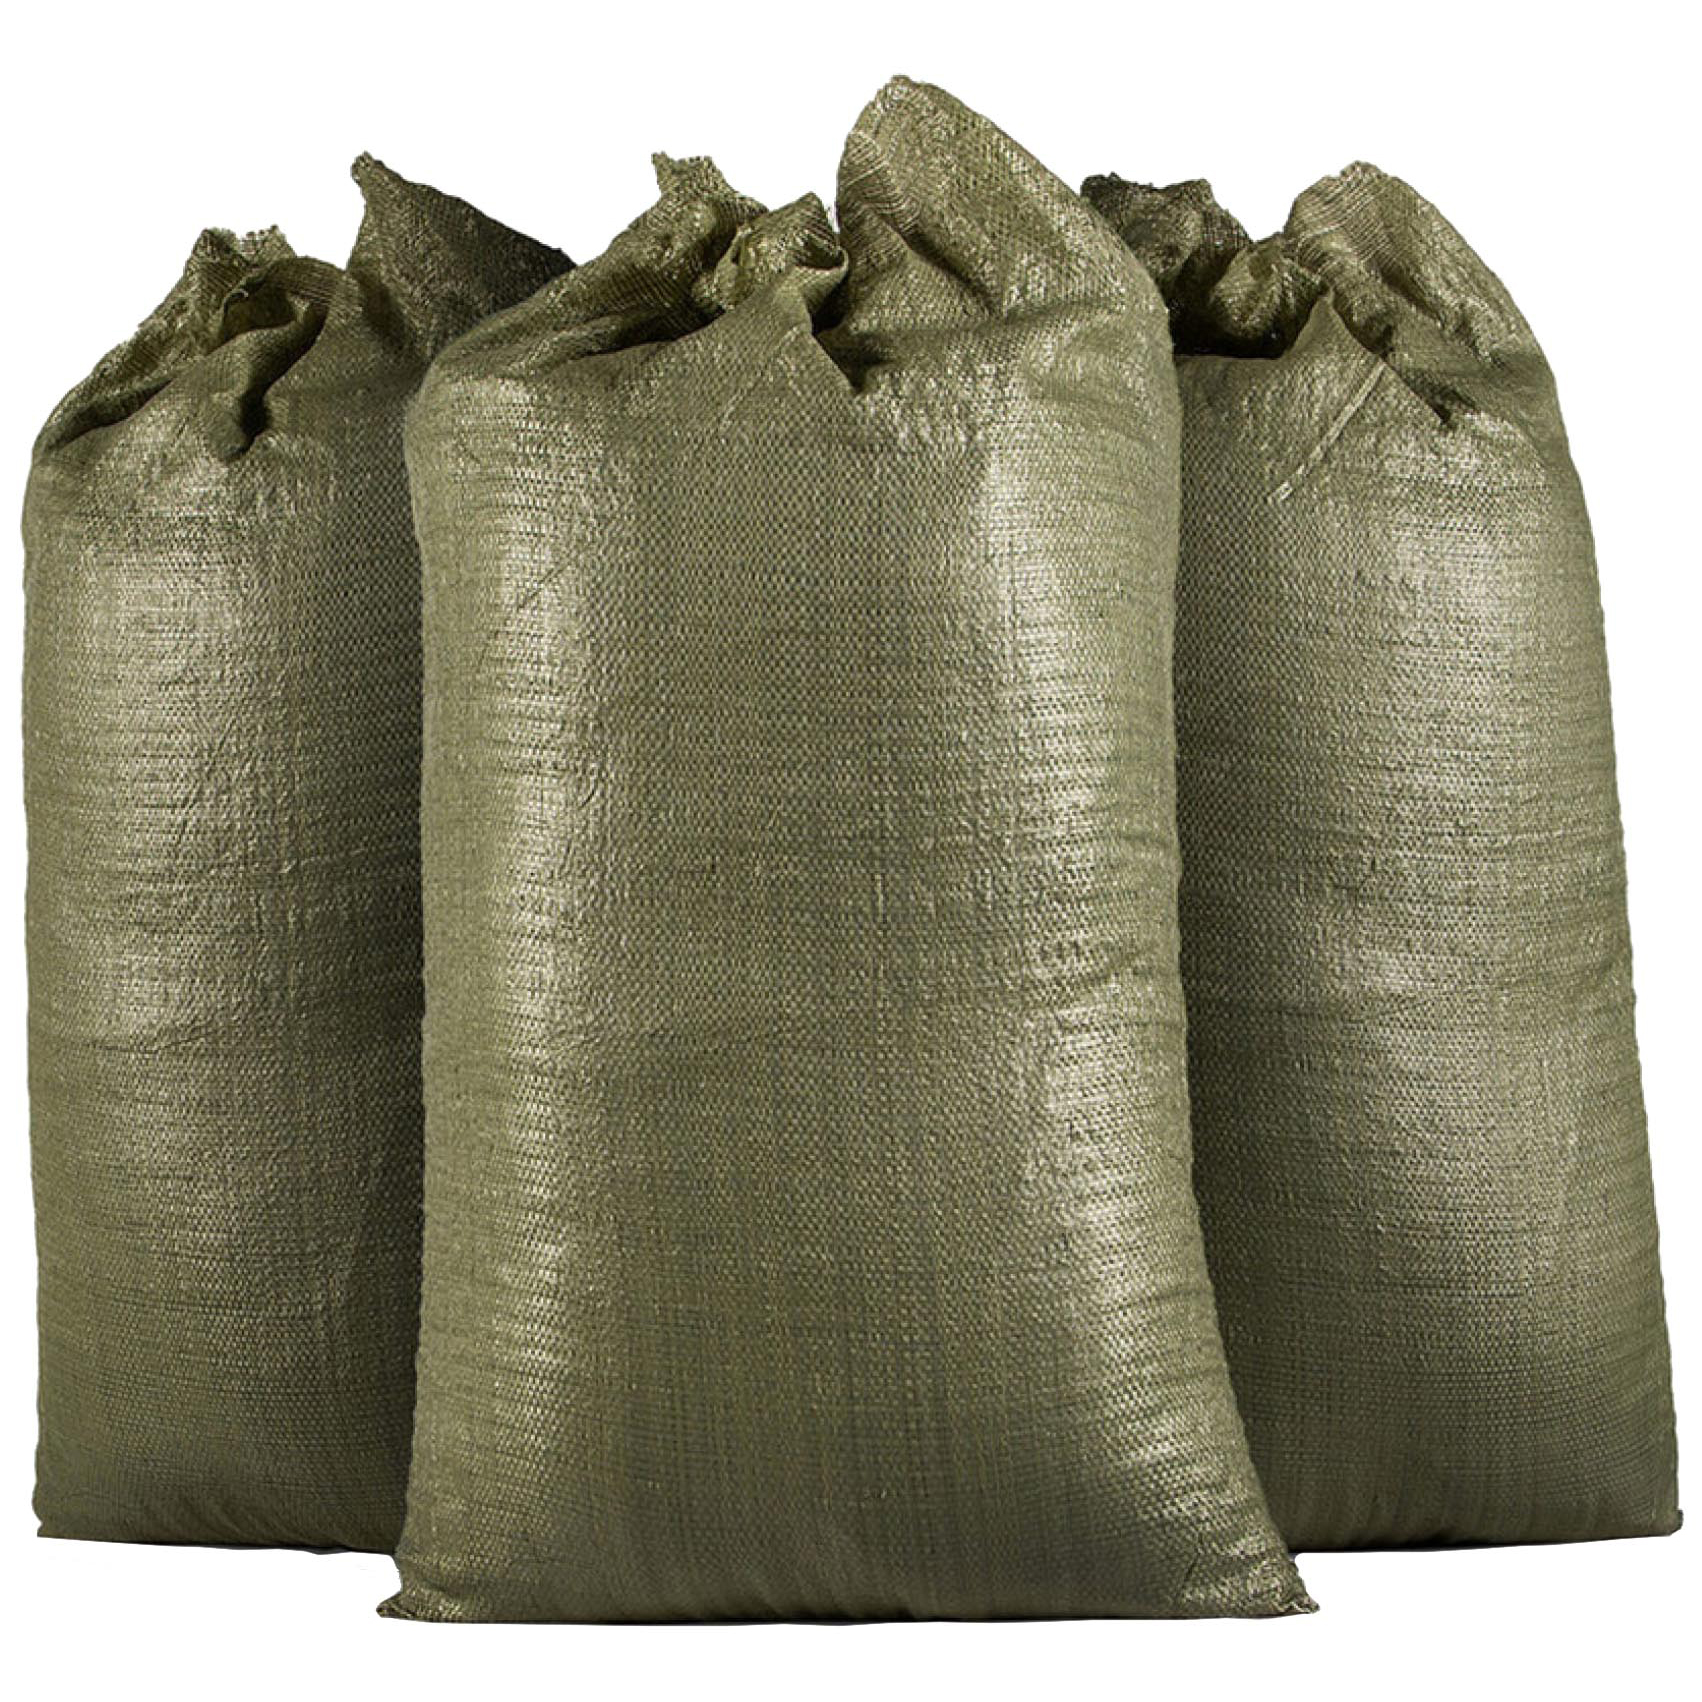 GAVIAL Мешок для строительного мусора (полипропиленовый) Зеленый, 55х95 см, 100 шт (тканны